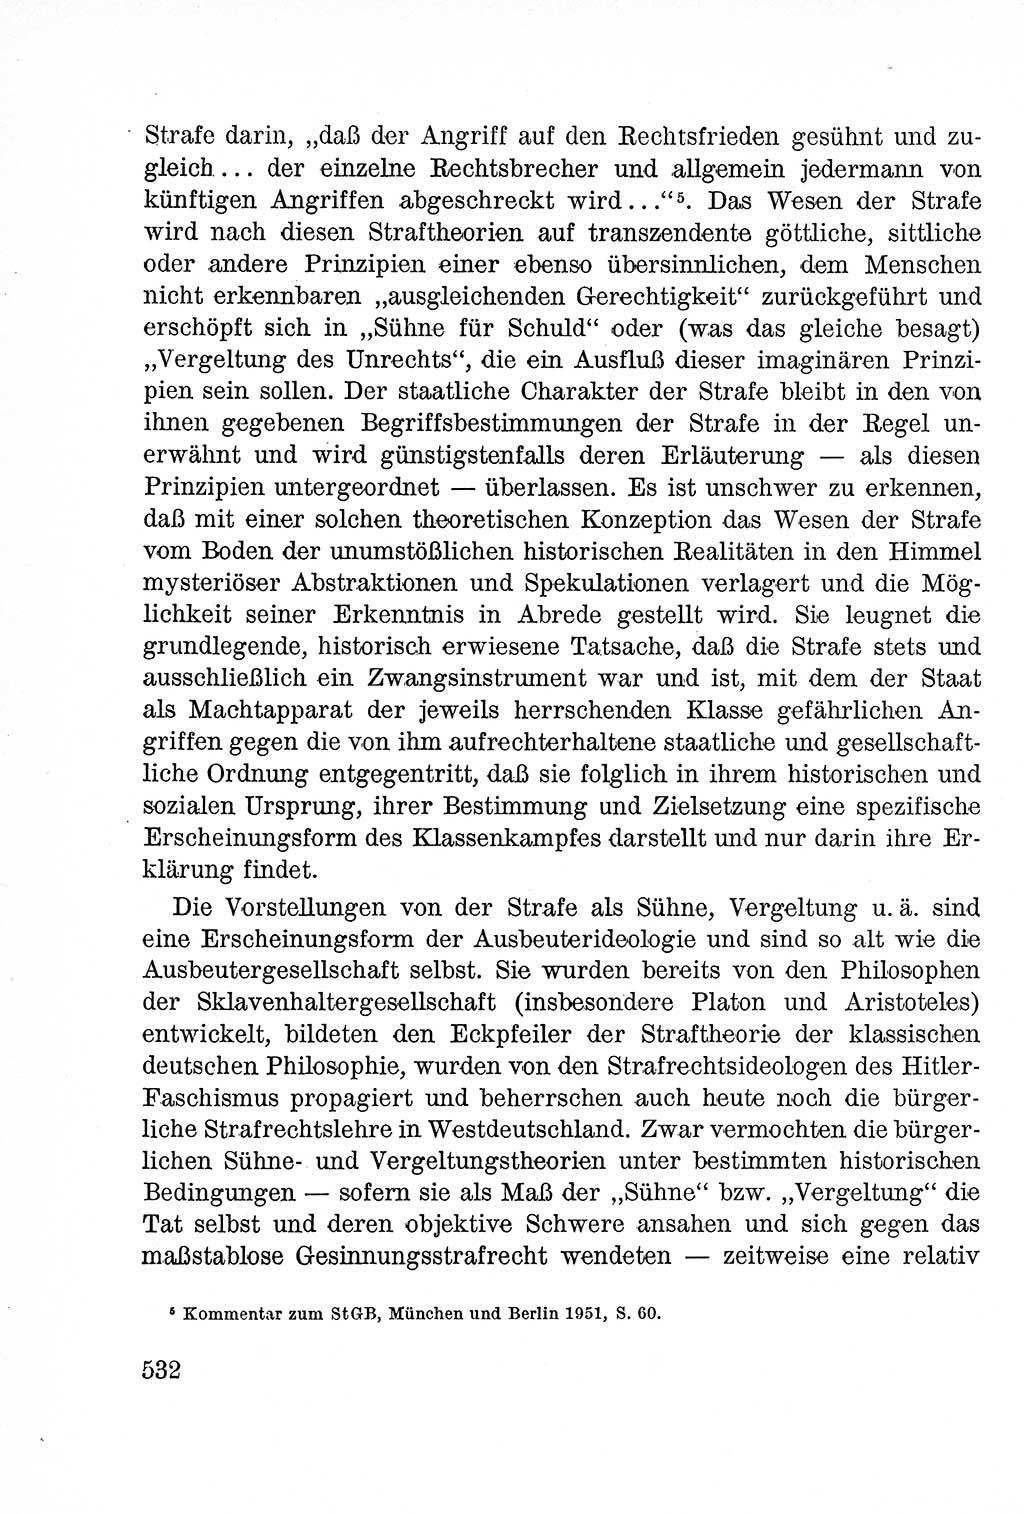 Lehrbuch des Strafrechts der Deutschen Demokratischen Republik (DDR), Allgemeiner Teil 1957, Seite 532 (Lb. Strafr. DDR AT 1957, S. 532)